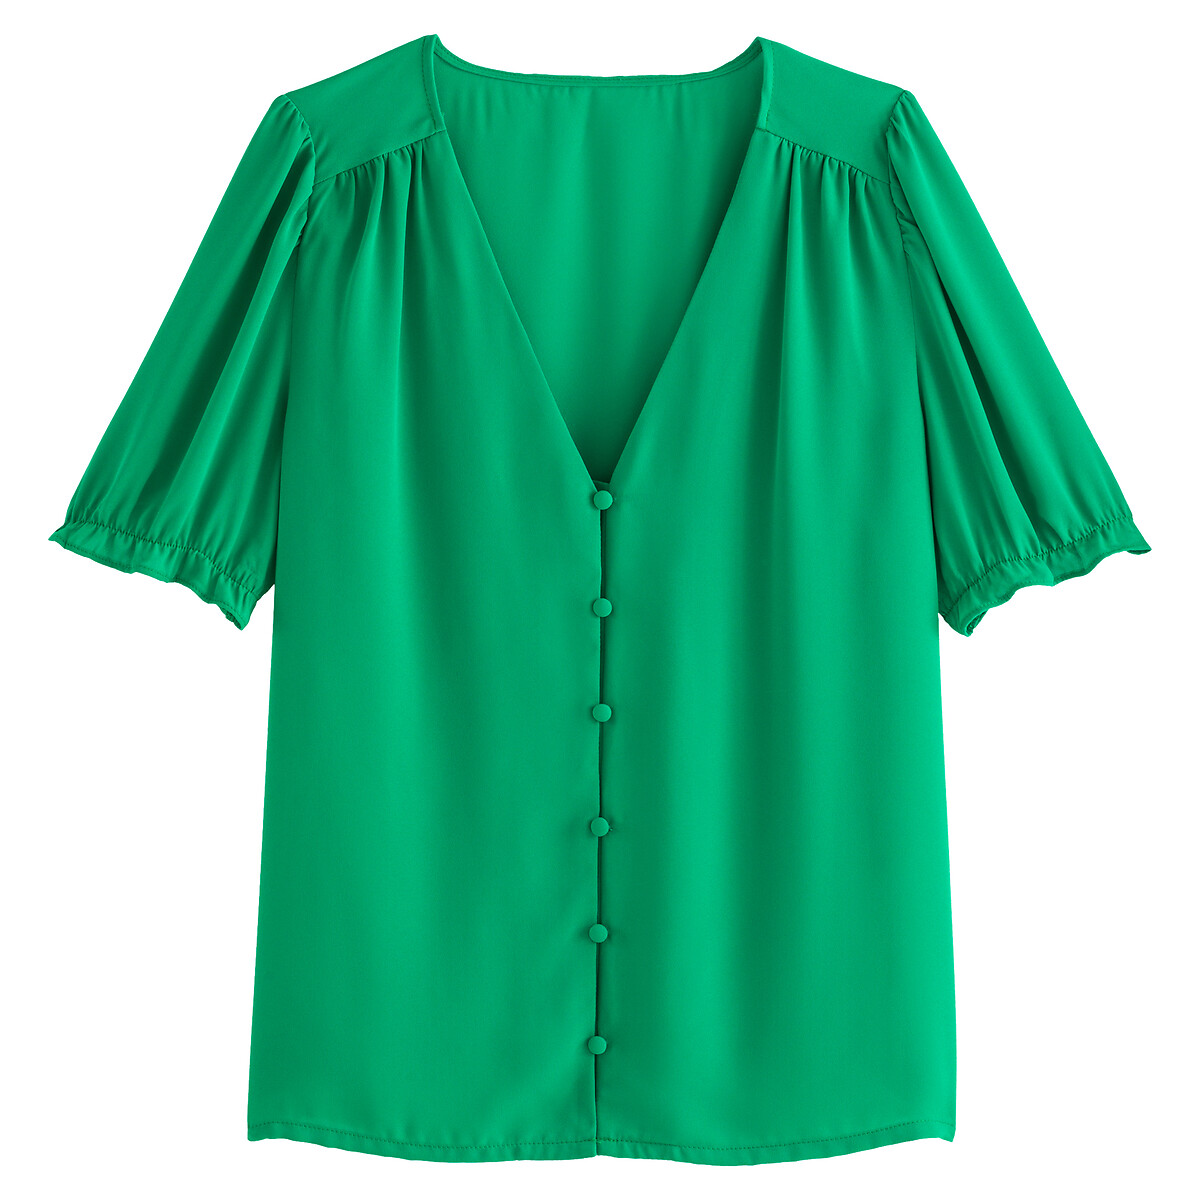 Блузка LA REDOUTE COLLECTIONS Блузка С V-образным вырезом с короткими рукавами 48 (FR) - 54 (RUS) зеленый, размер 48 (FR) - 54 (RUS) Блузка С V-образным вырезом с короткими рукавами 48 (FR) - 54 (RUS) зеленый - фото 5